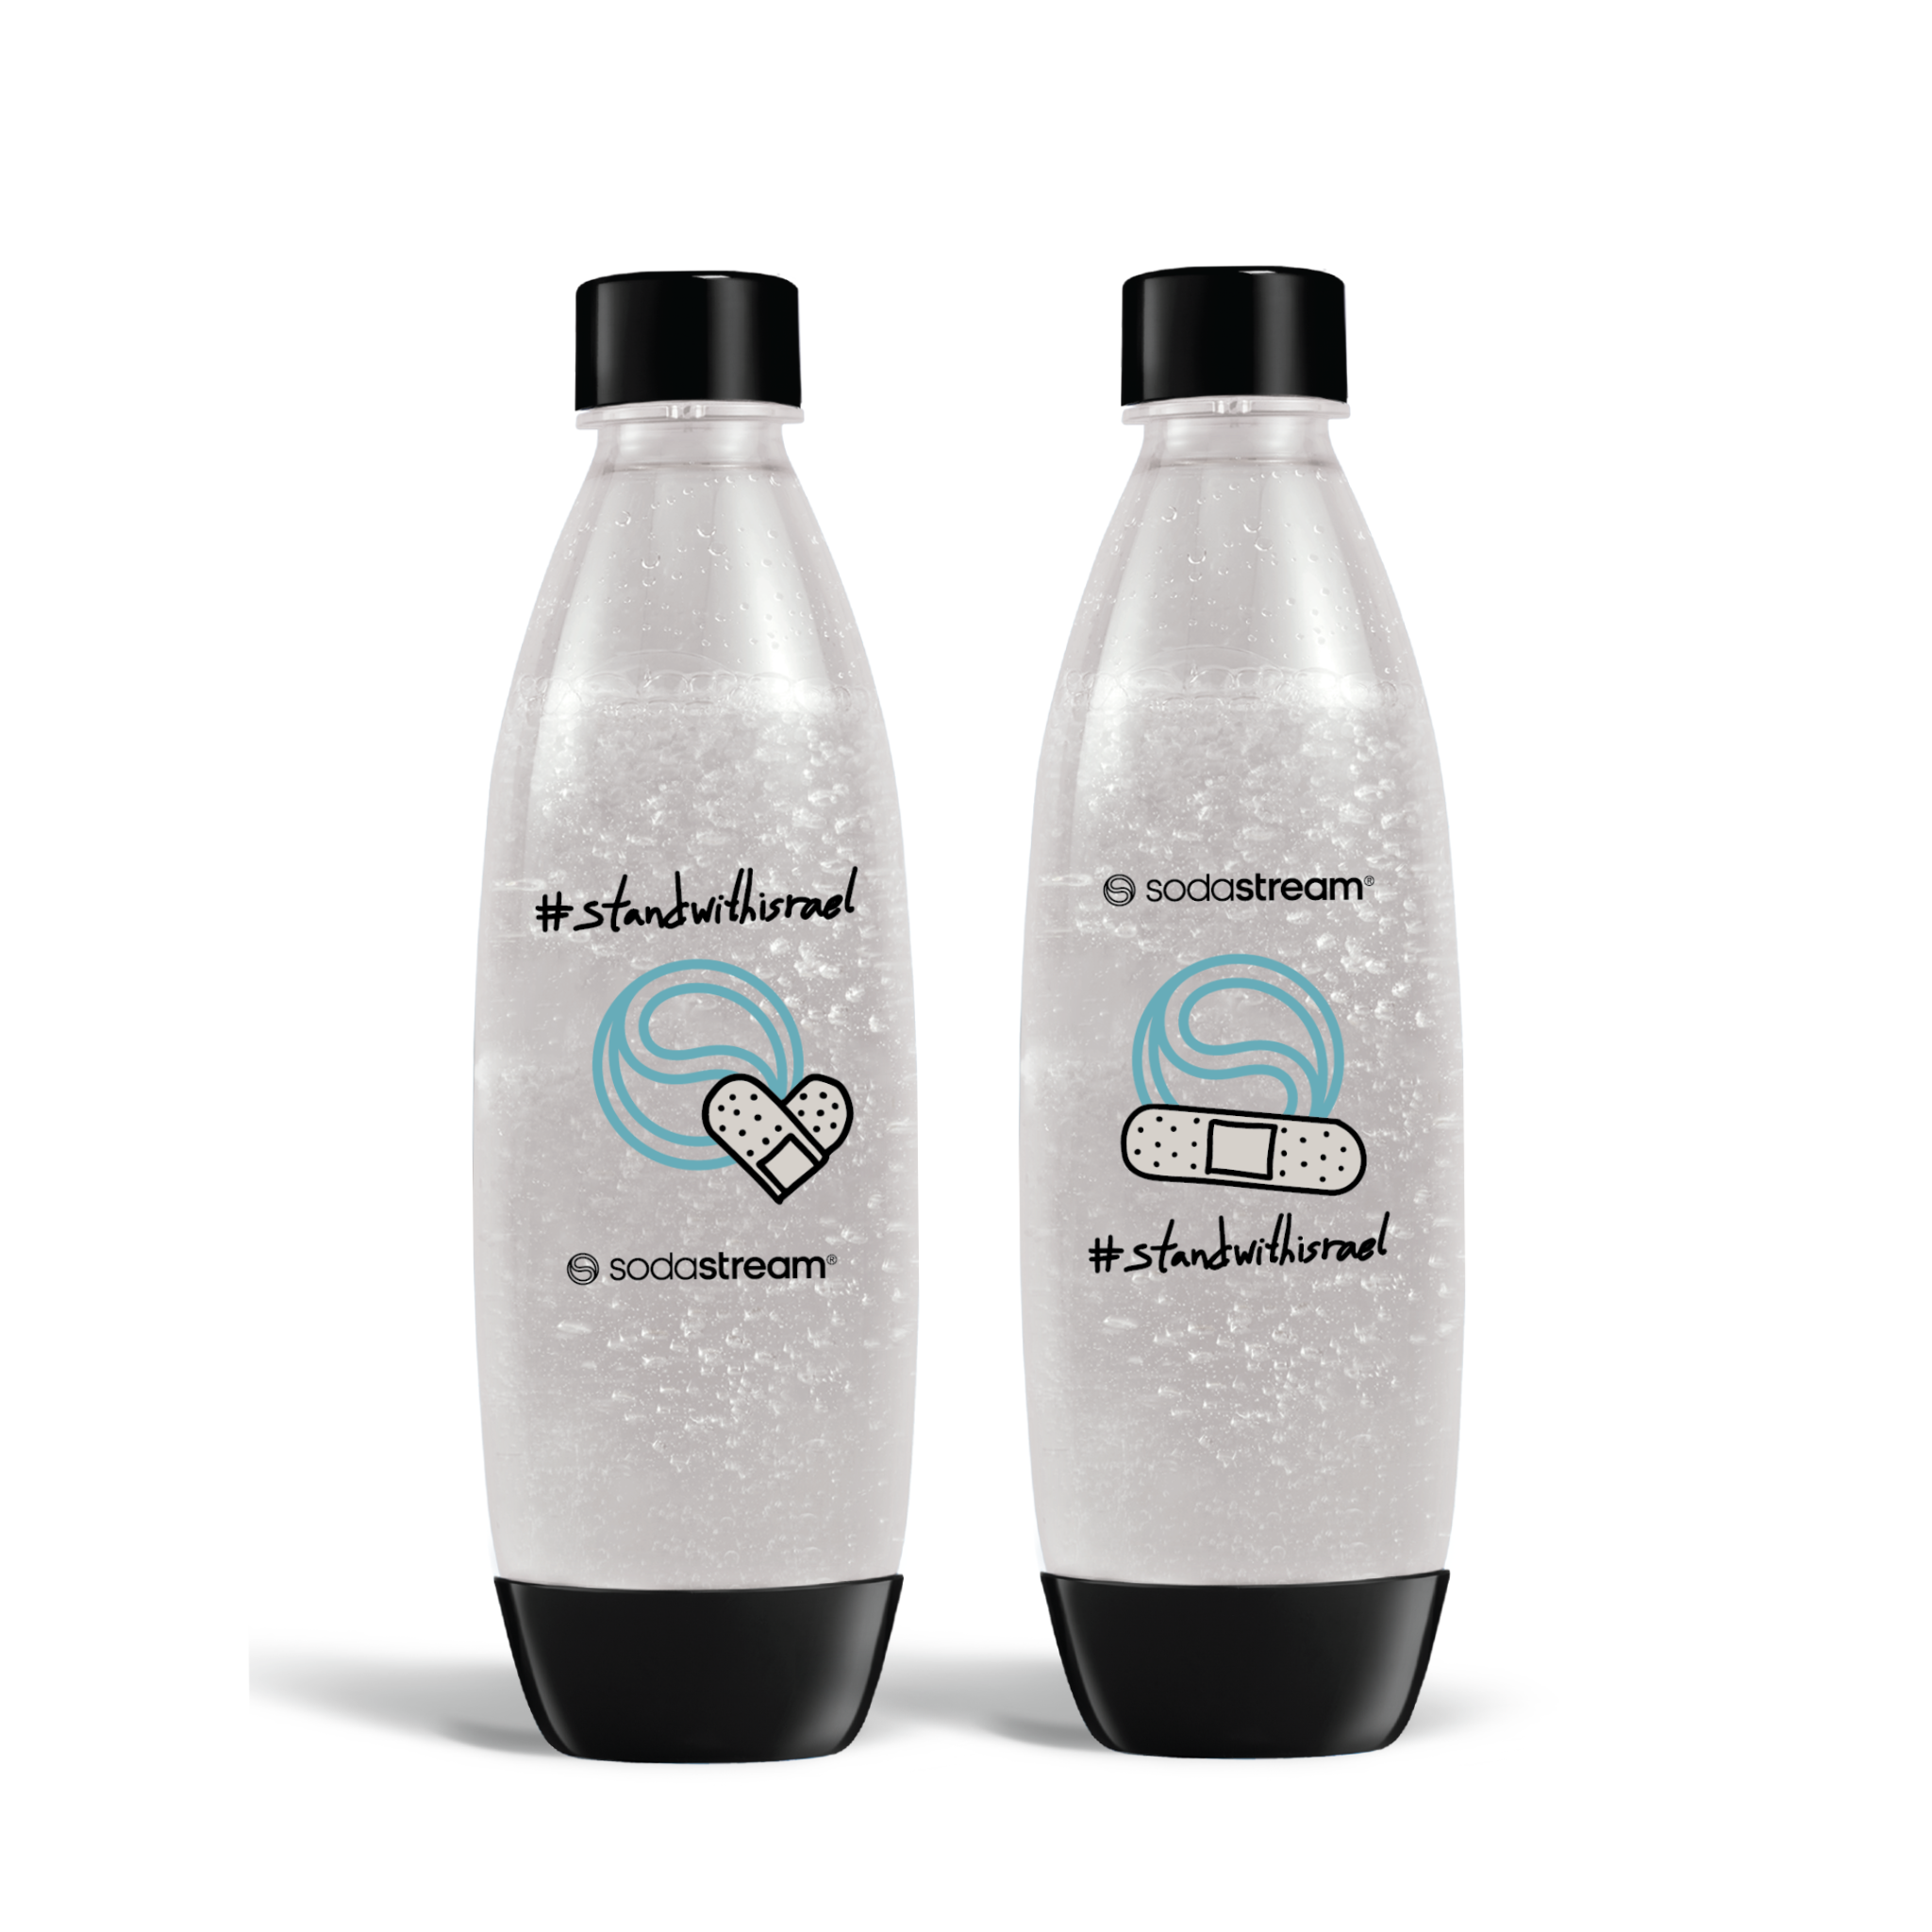 זוג בקבוקי פלסטיק מעוצבים בשיתוף פעולה עם האמן Dede להעלאת המודעות לנפגעי טראומה על רקע לאומי sodastream